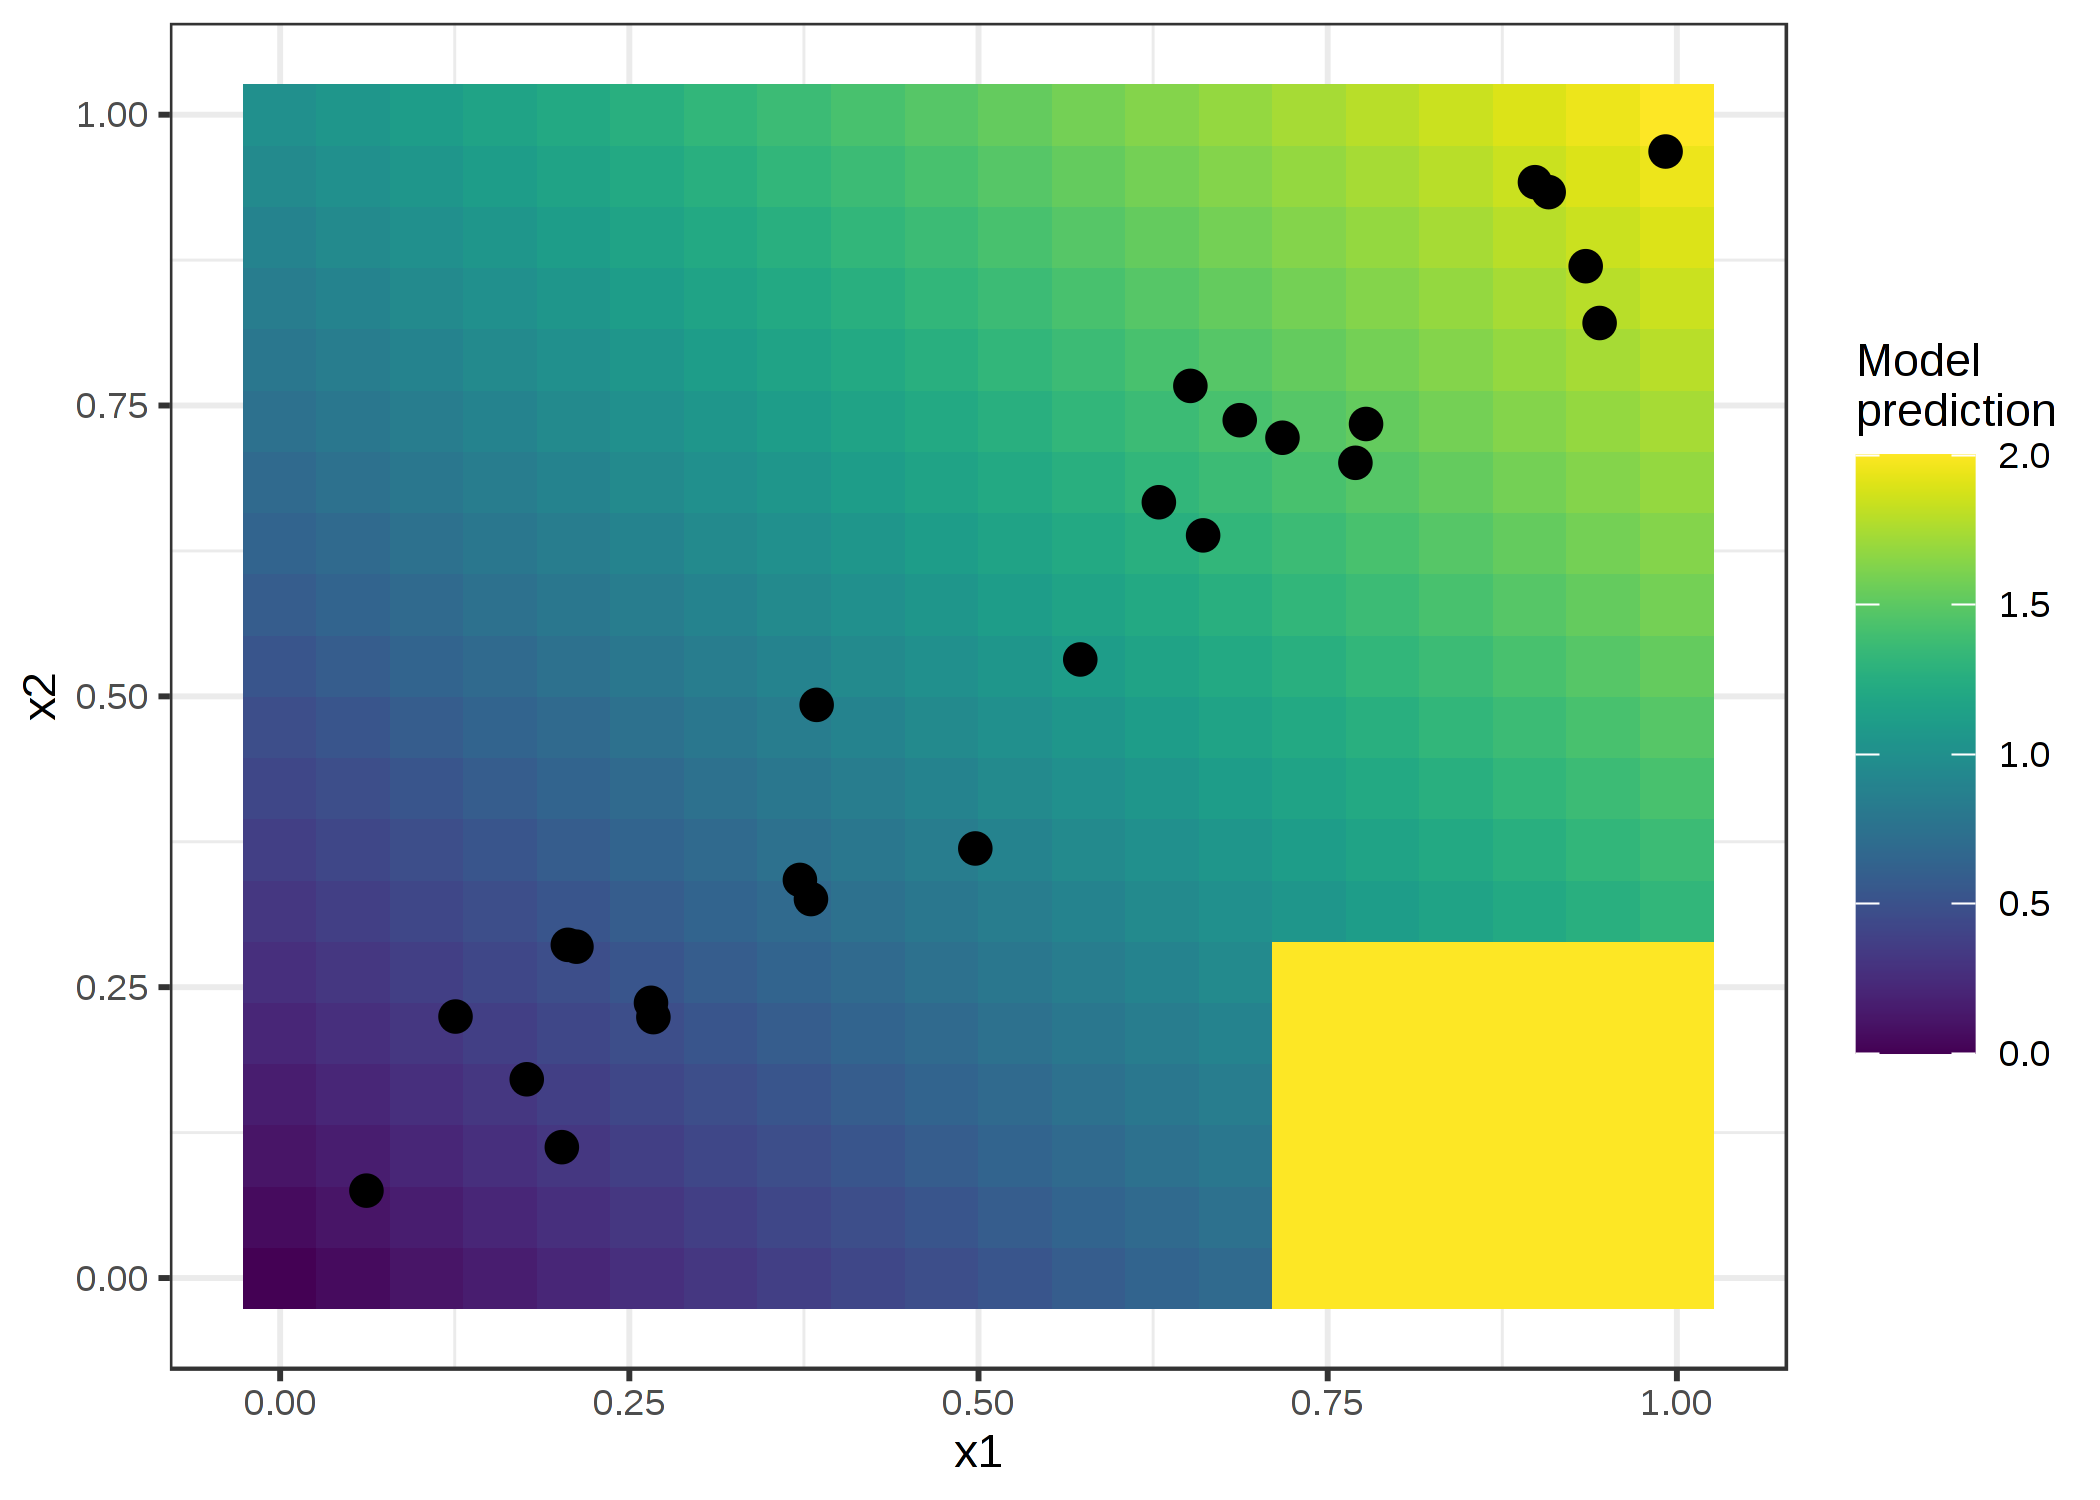 2つの特徴量と予測結果。このモデルは2つの特徴量の和を予測している(影の背景)が、x1>0.7, x2<0.3 の範囲では常に2と予測するという例外があります。この領域はデータの分布(点群)とかけ離れており、モデルの性能には影響しないが、解釈にも影響を与えるべきではない。